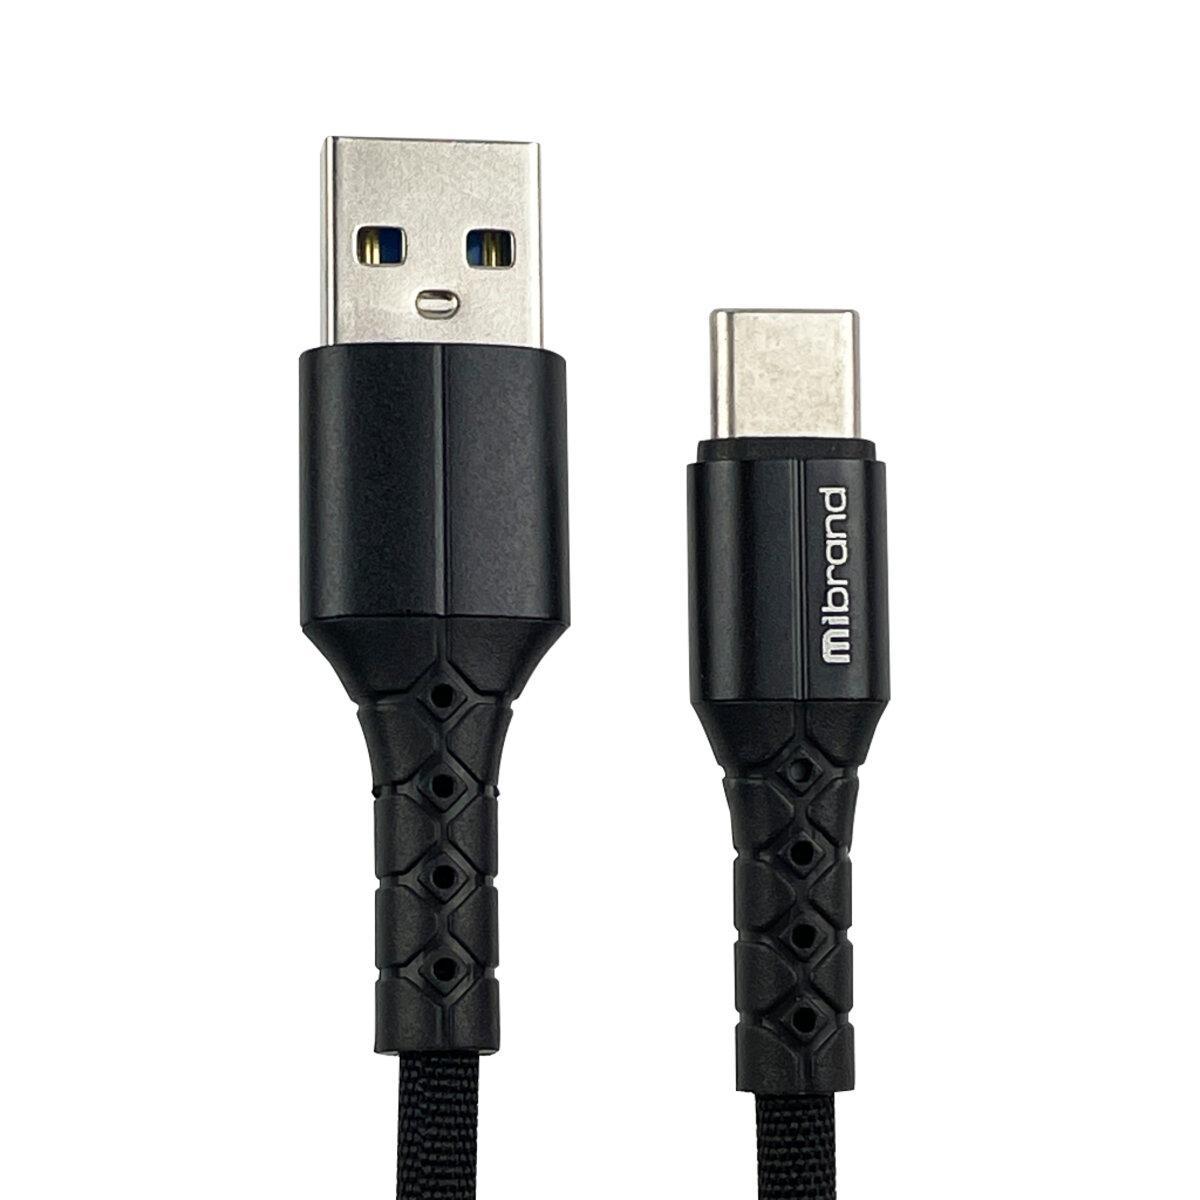 Кабель Mibrand MI-32 Nylon Charging Line USB for Type-C 2A 2m Black